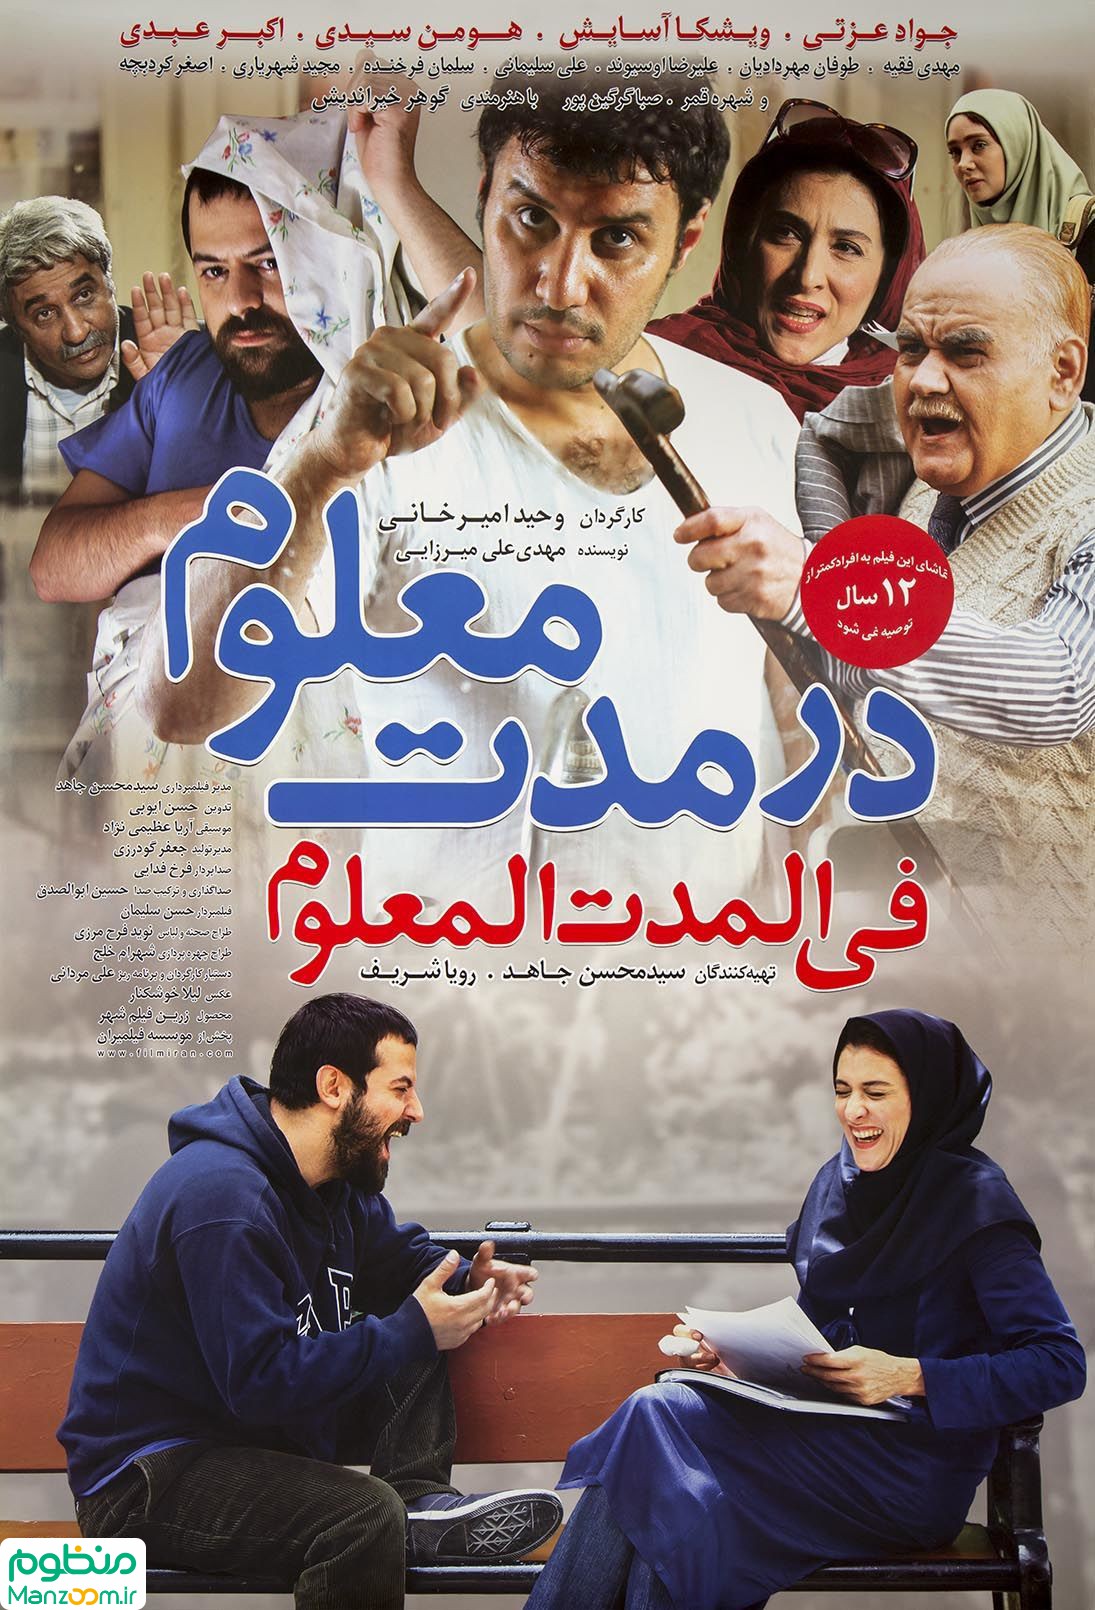  فیلم سینمایی در مدت معلوم به کارگردانی وحید امیرخانی